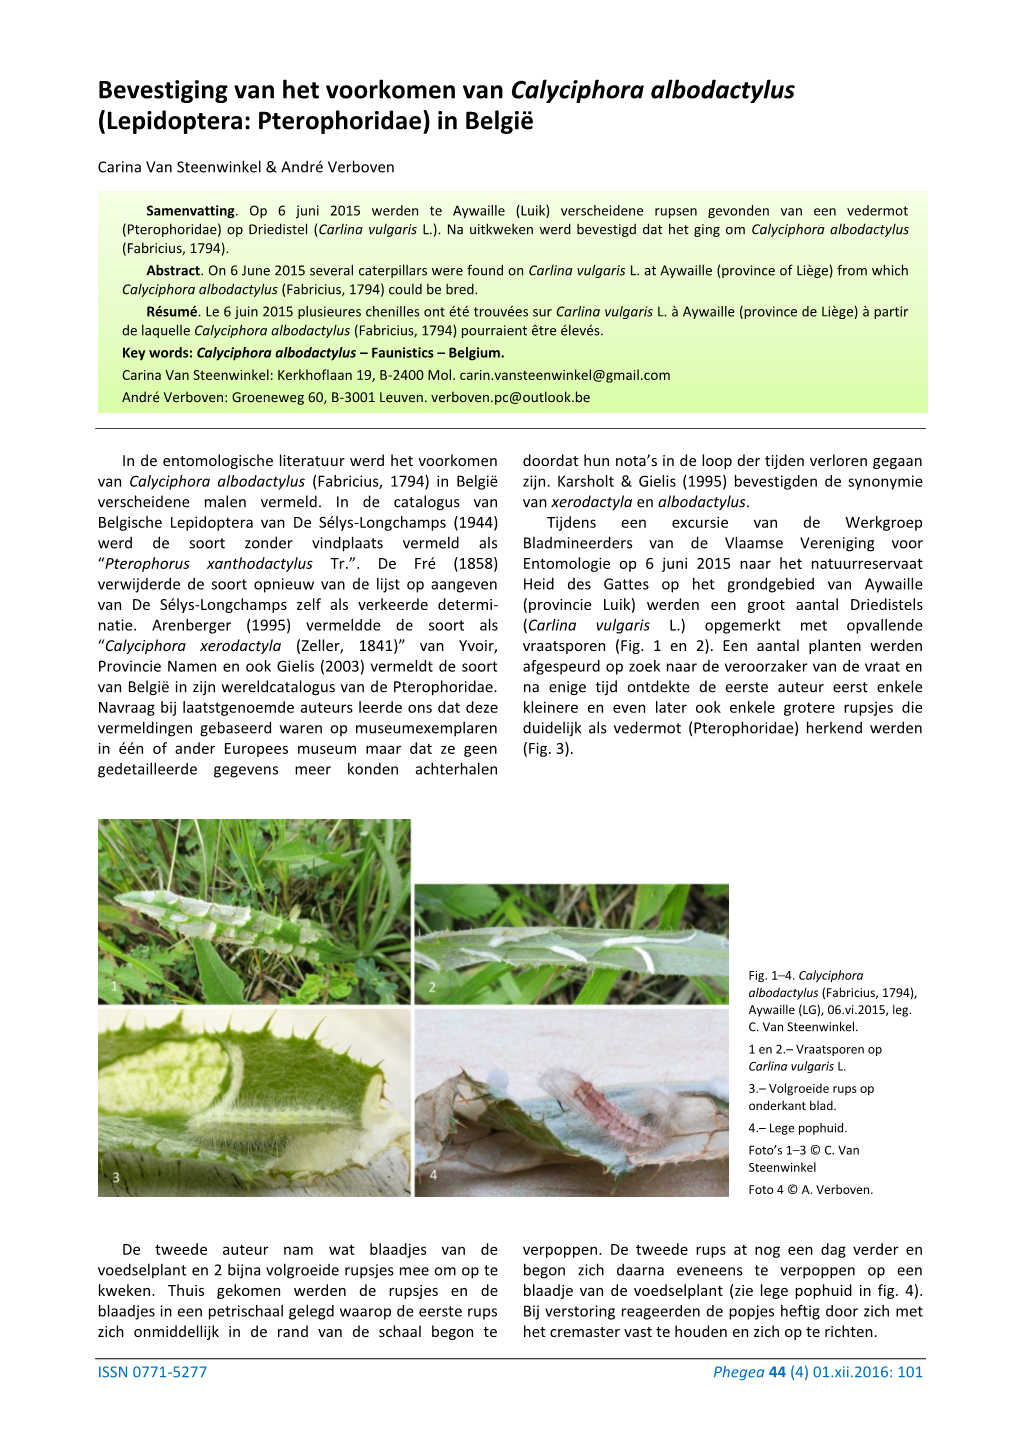 Bevestiging Van Het Voorkomen Van Calyciphora Albodactylus (Lepidoptera: Pterophoridae) in België